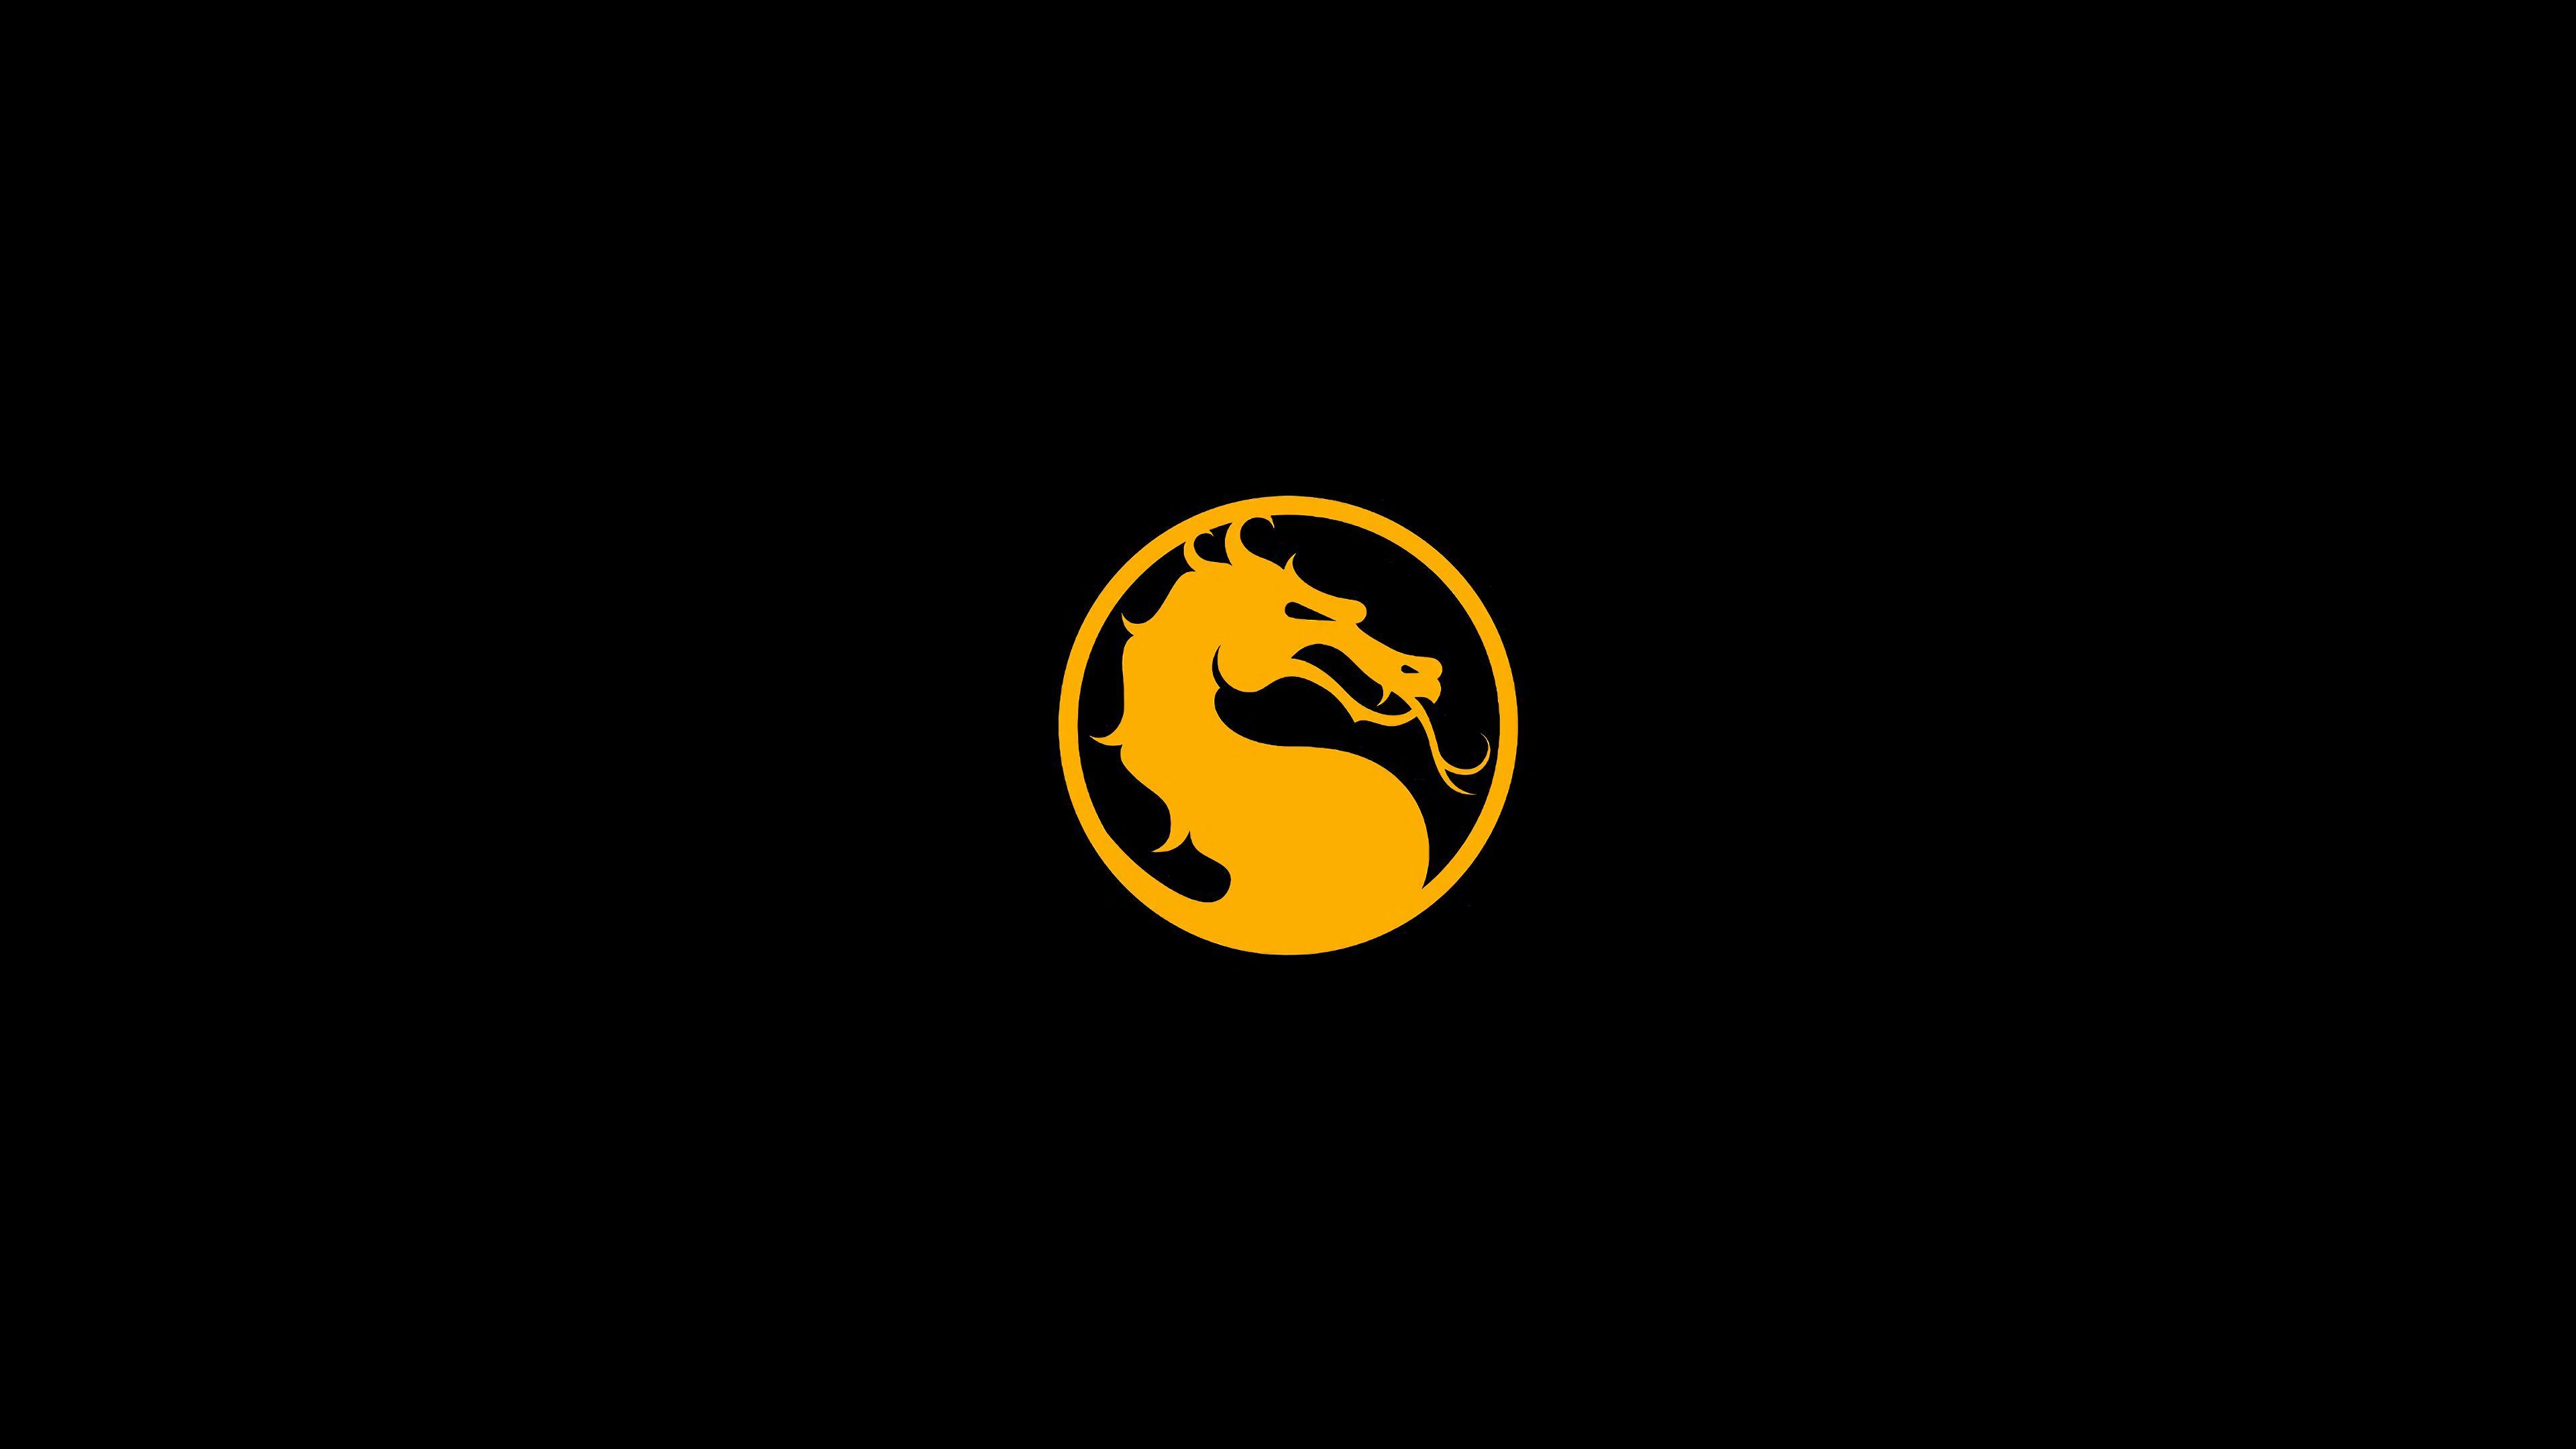 All Mortal Kombat Logo - Dragon logo Mortal Kombat games, fan site!